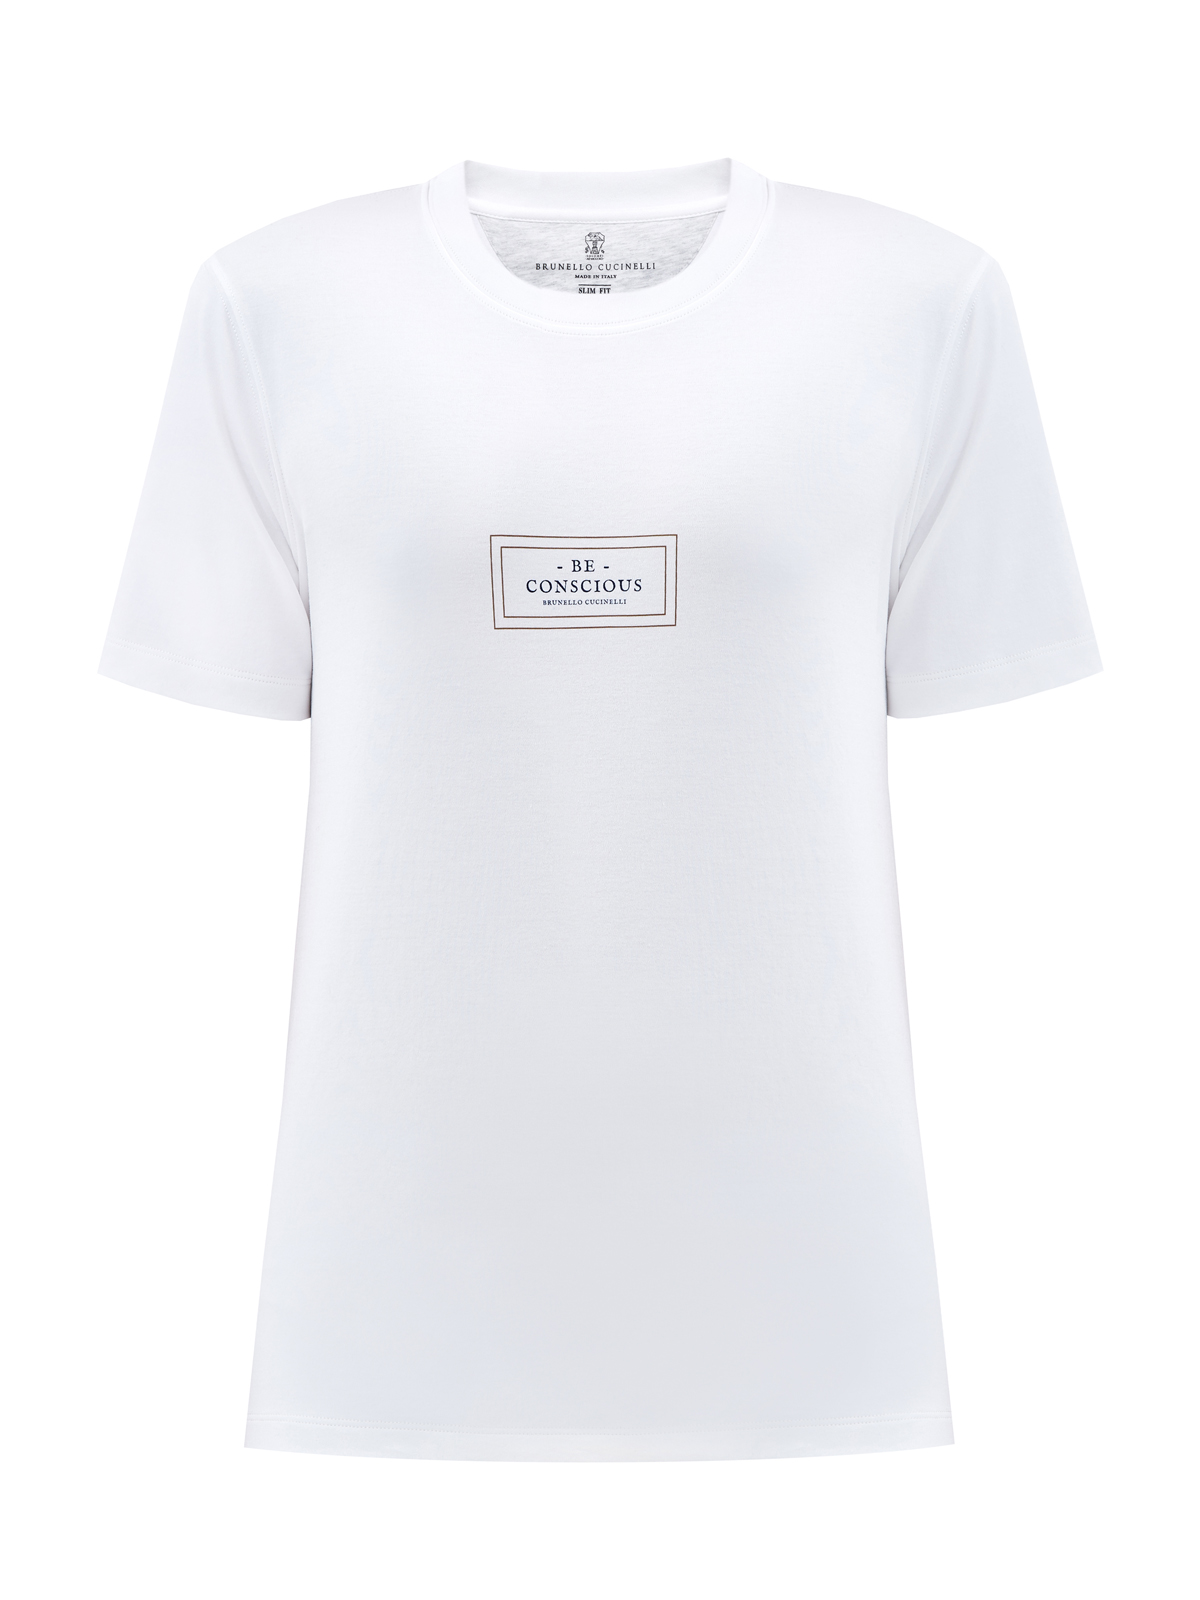 Белая футболка из джерси с минималистичным принтом BRUNELLO CUCINELLI, цвет белый, размер 46;52;56;50 - фото 1